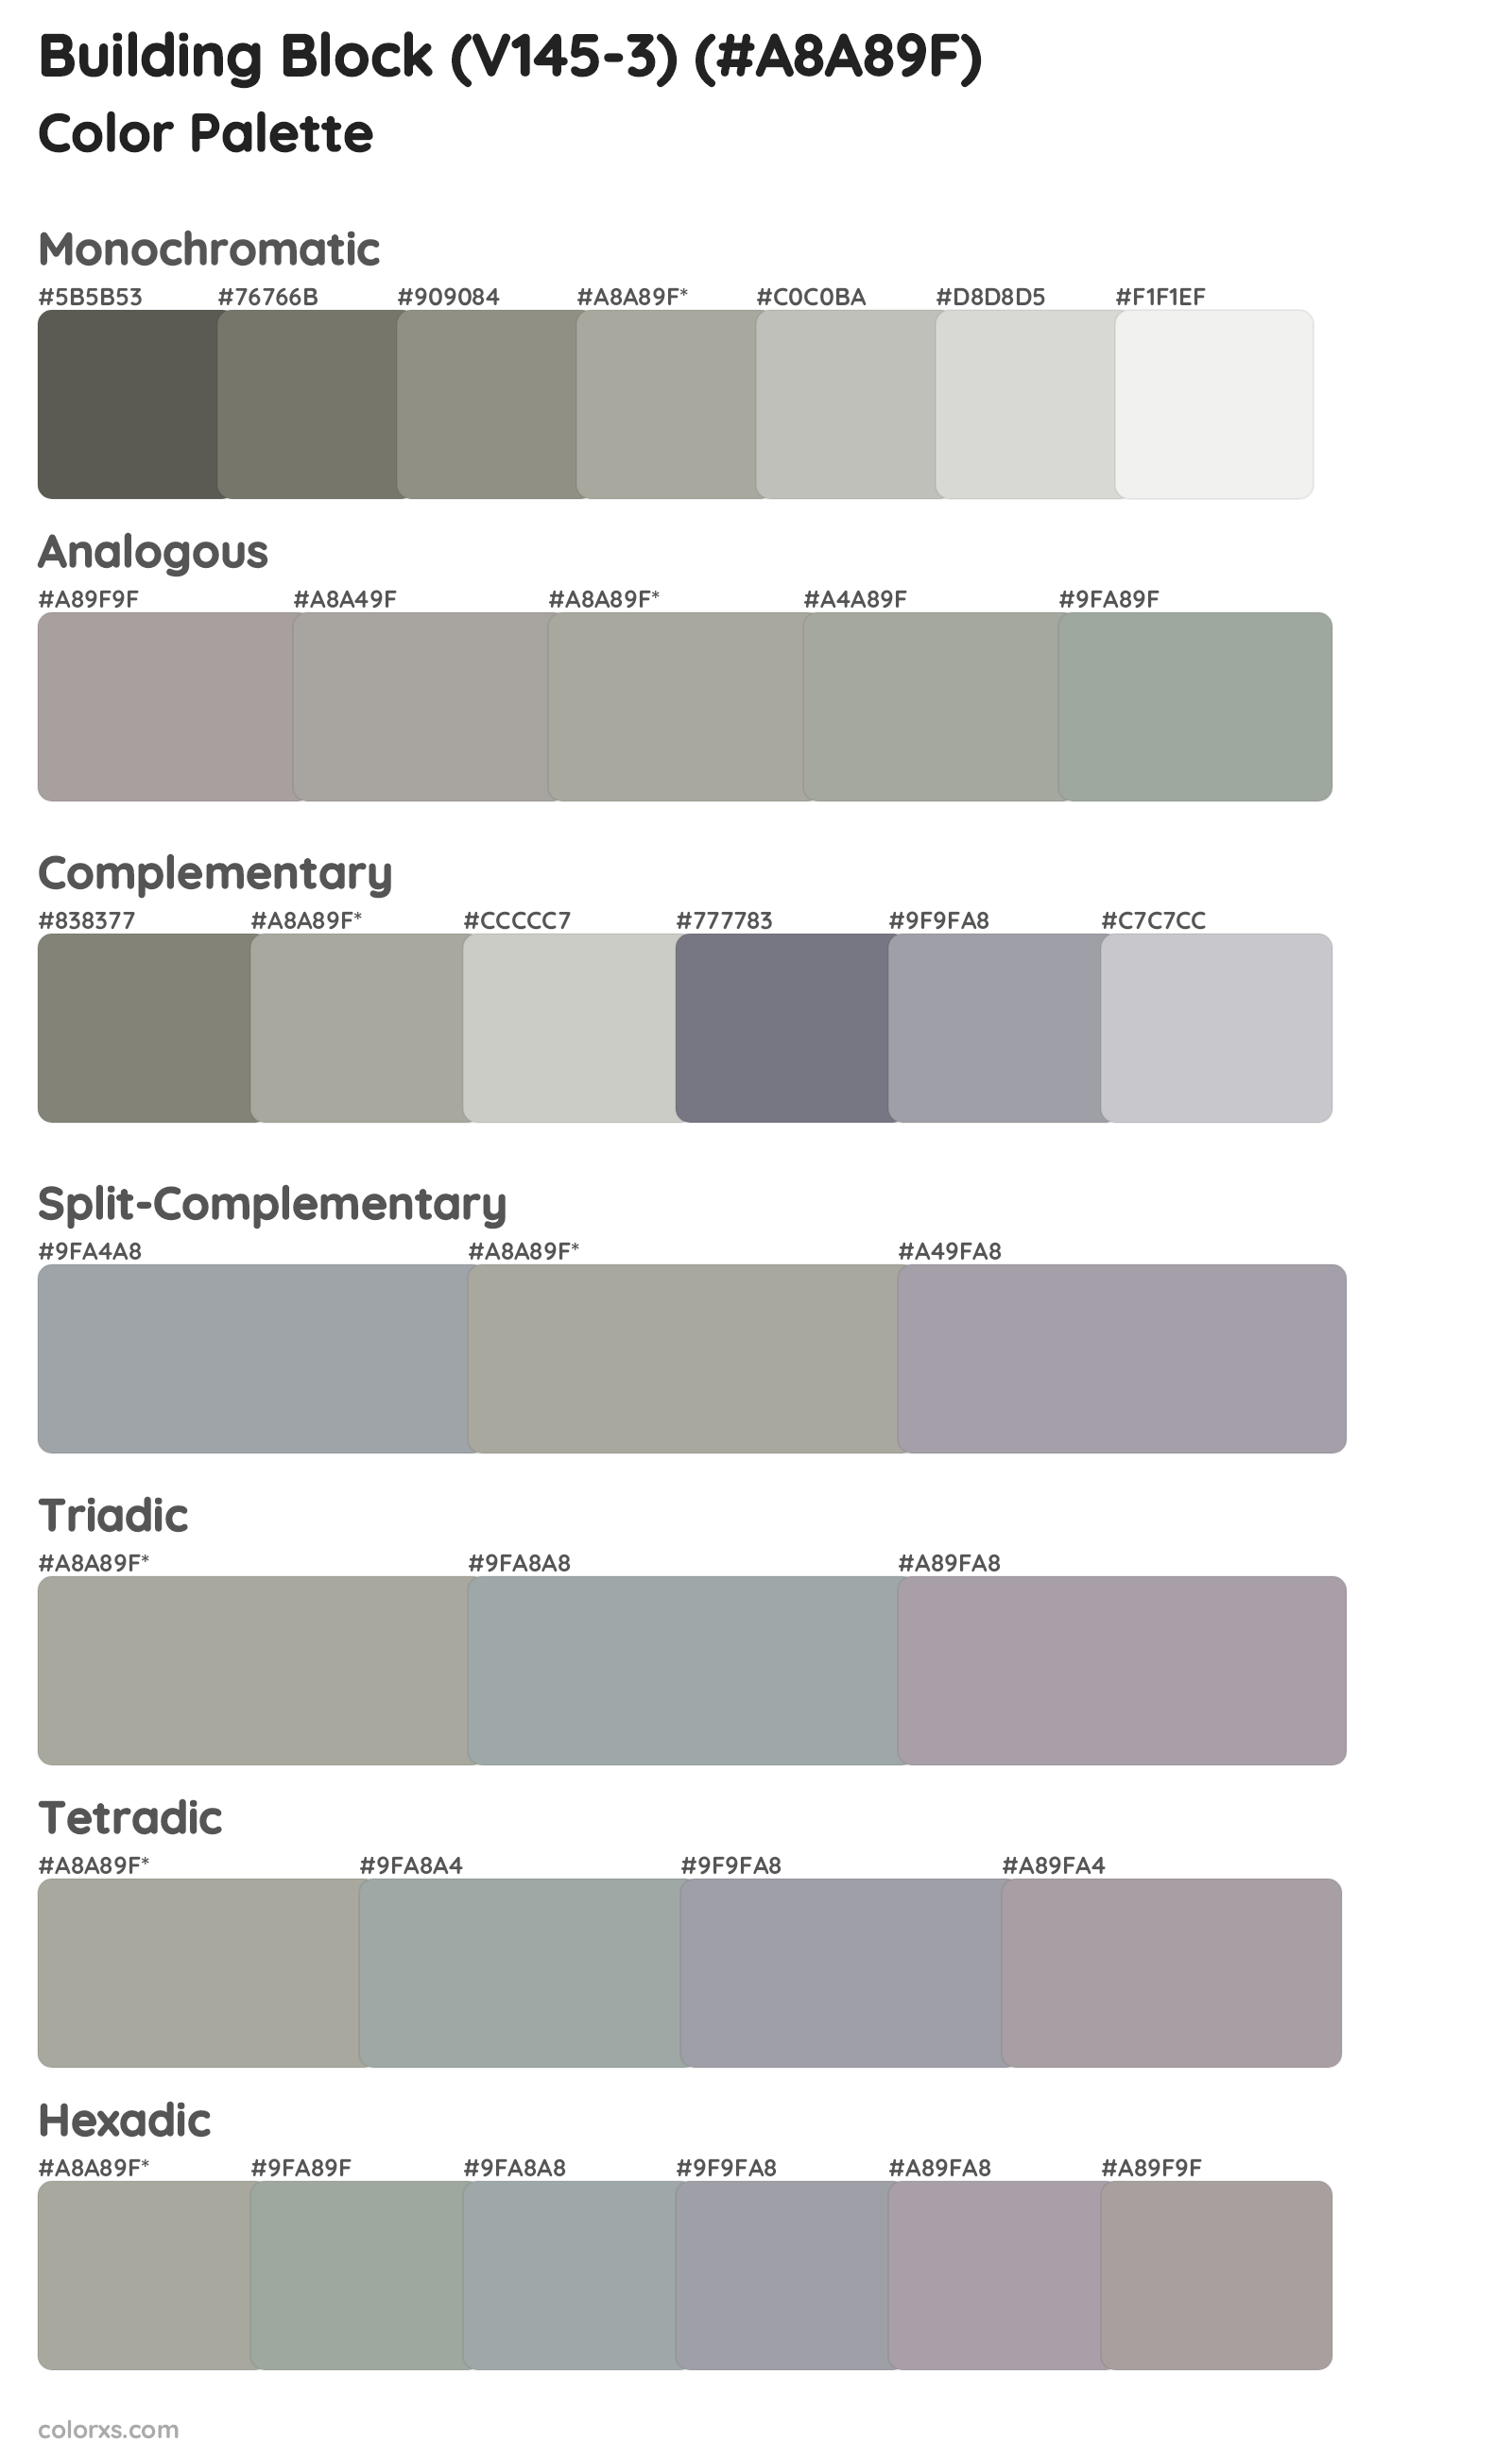 Building Block (V145-3) Color Scheme Palettes